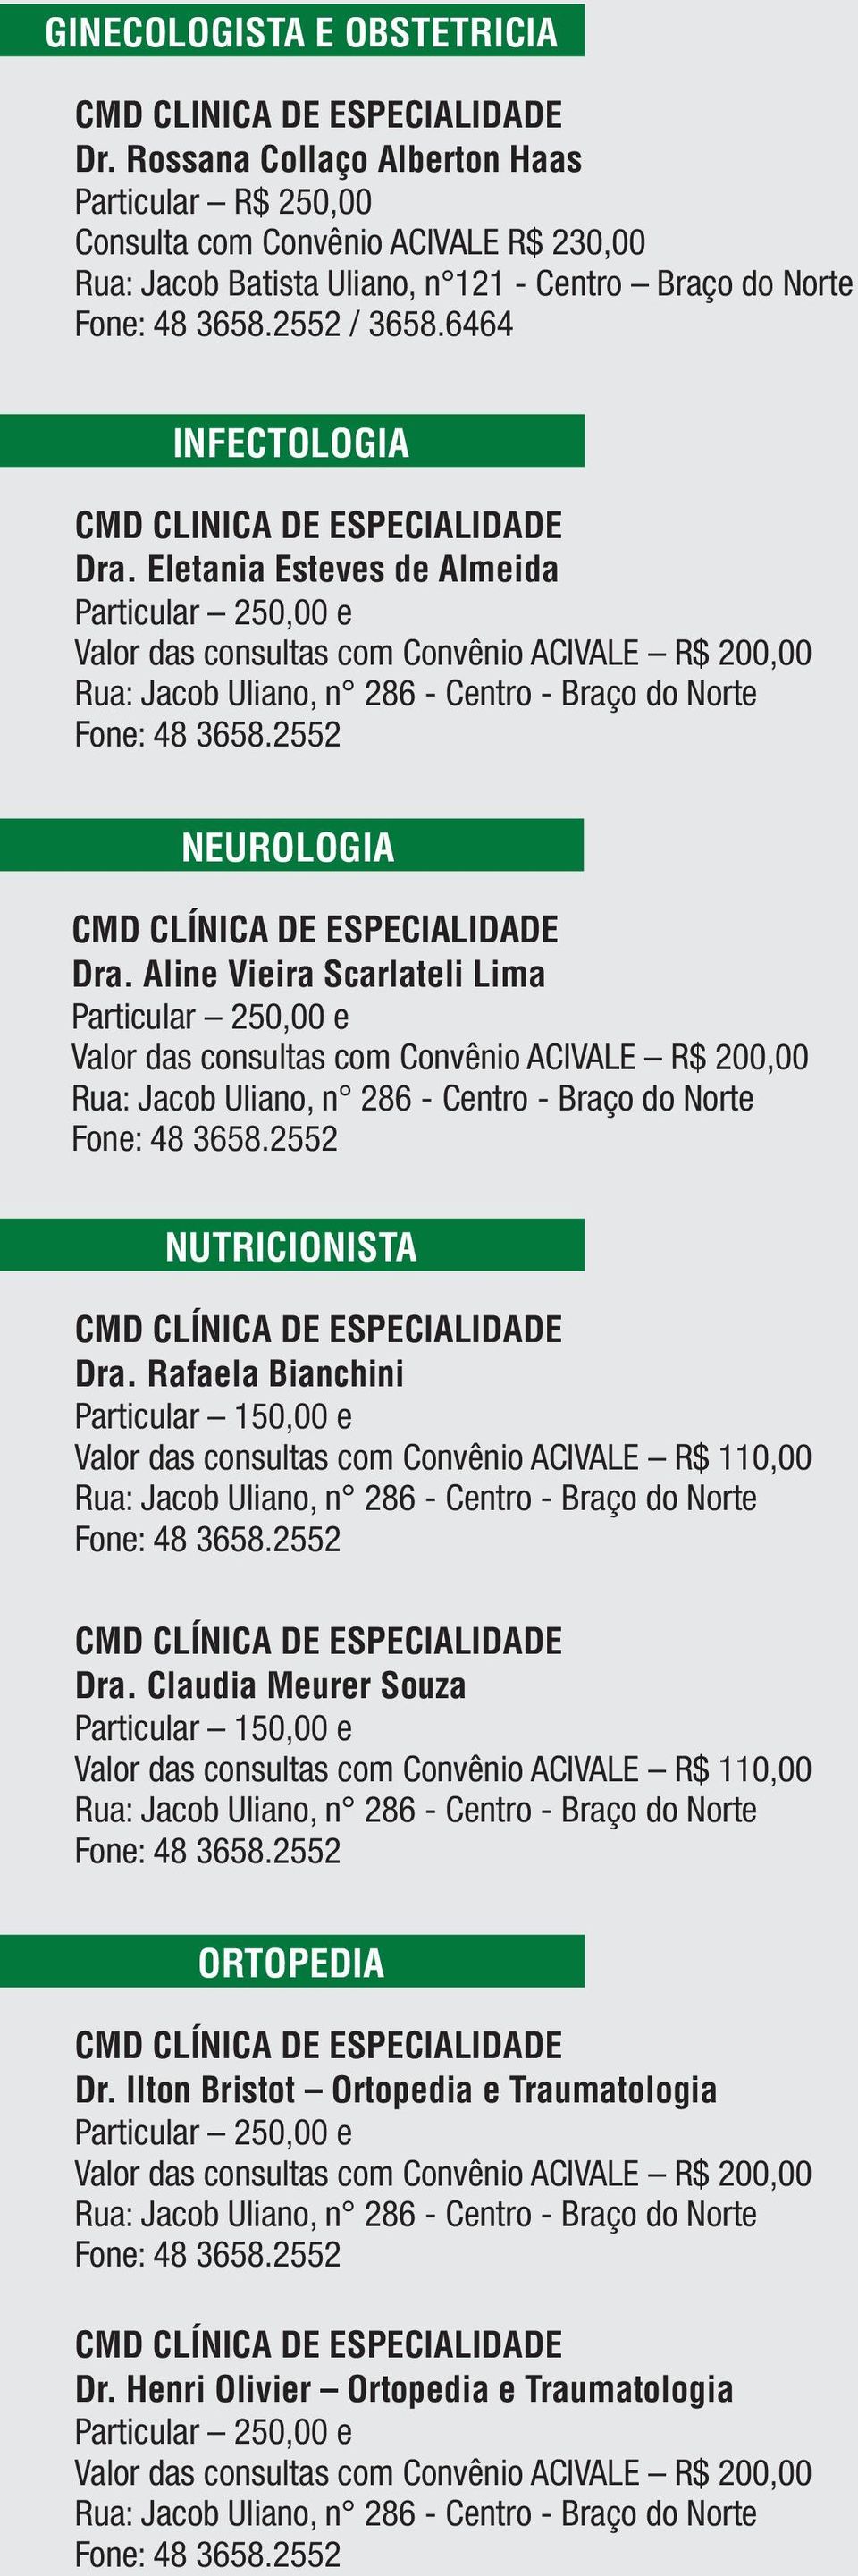 Aline Vieira Scarlateli Lima Particular e Valor das consultas com Convênio ACIVALE R$ 200,00 NUTRICIONISTA Dra.